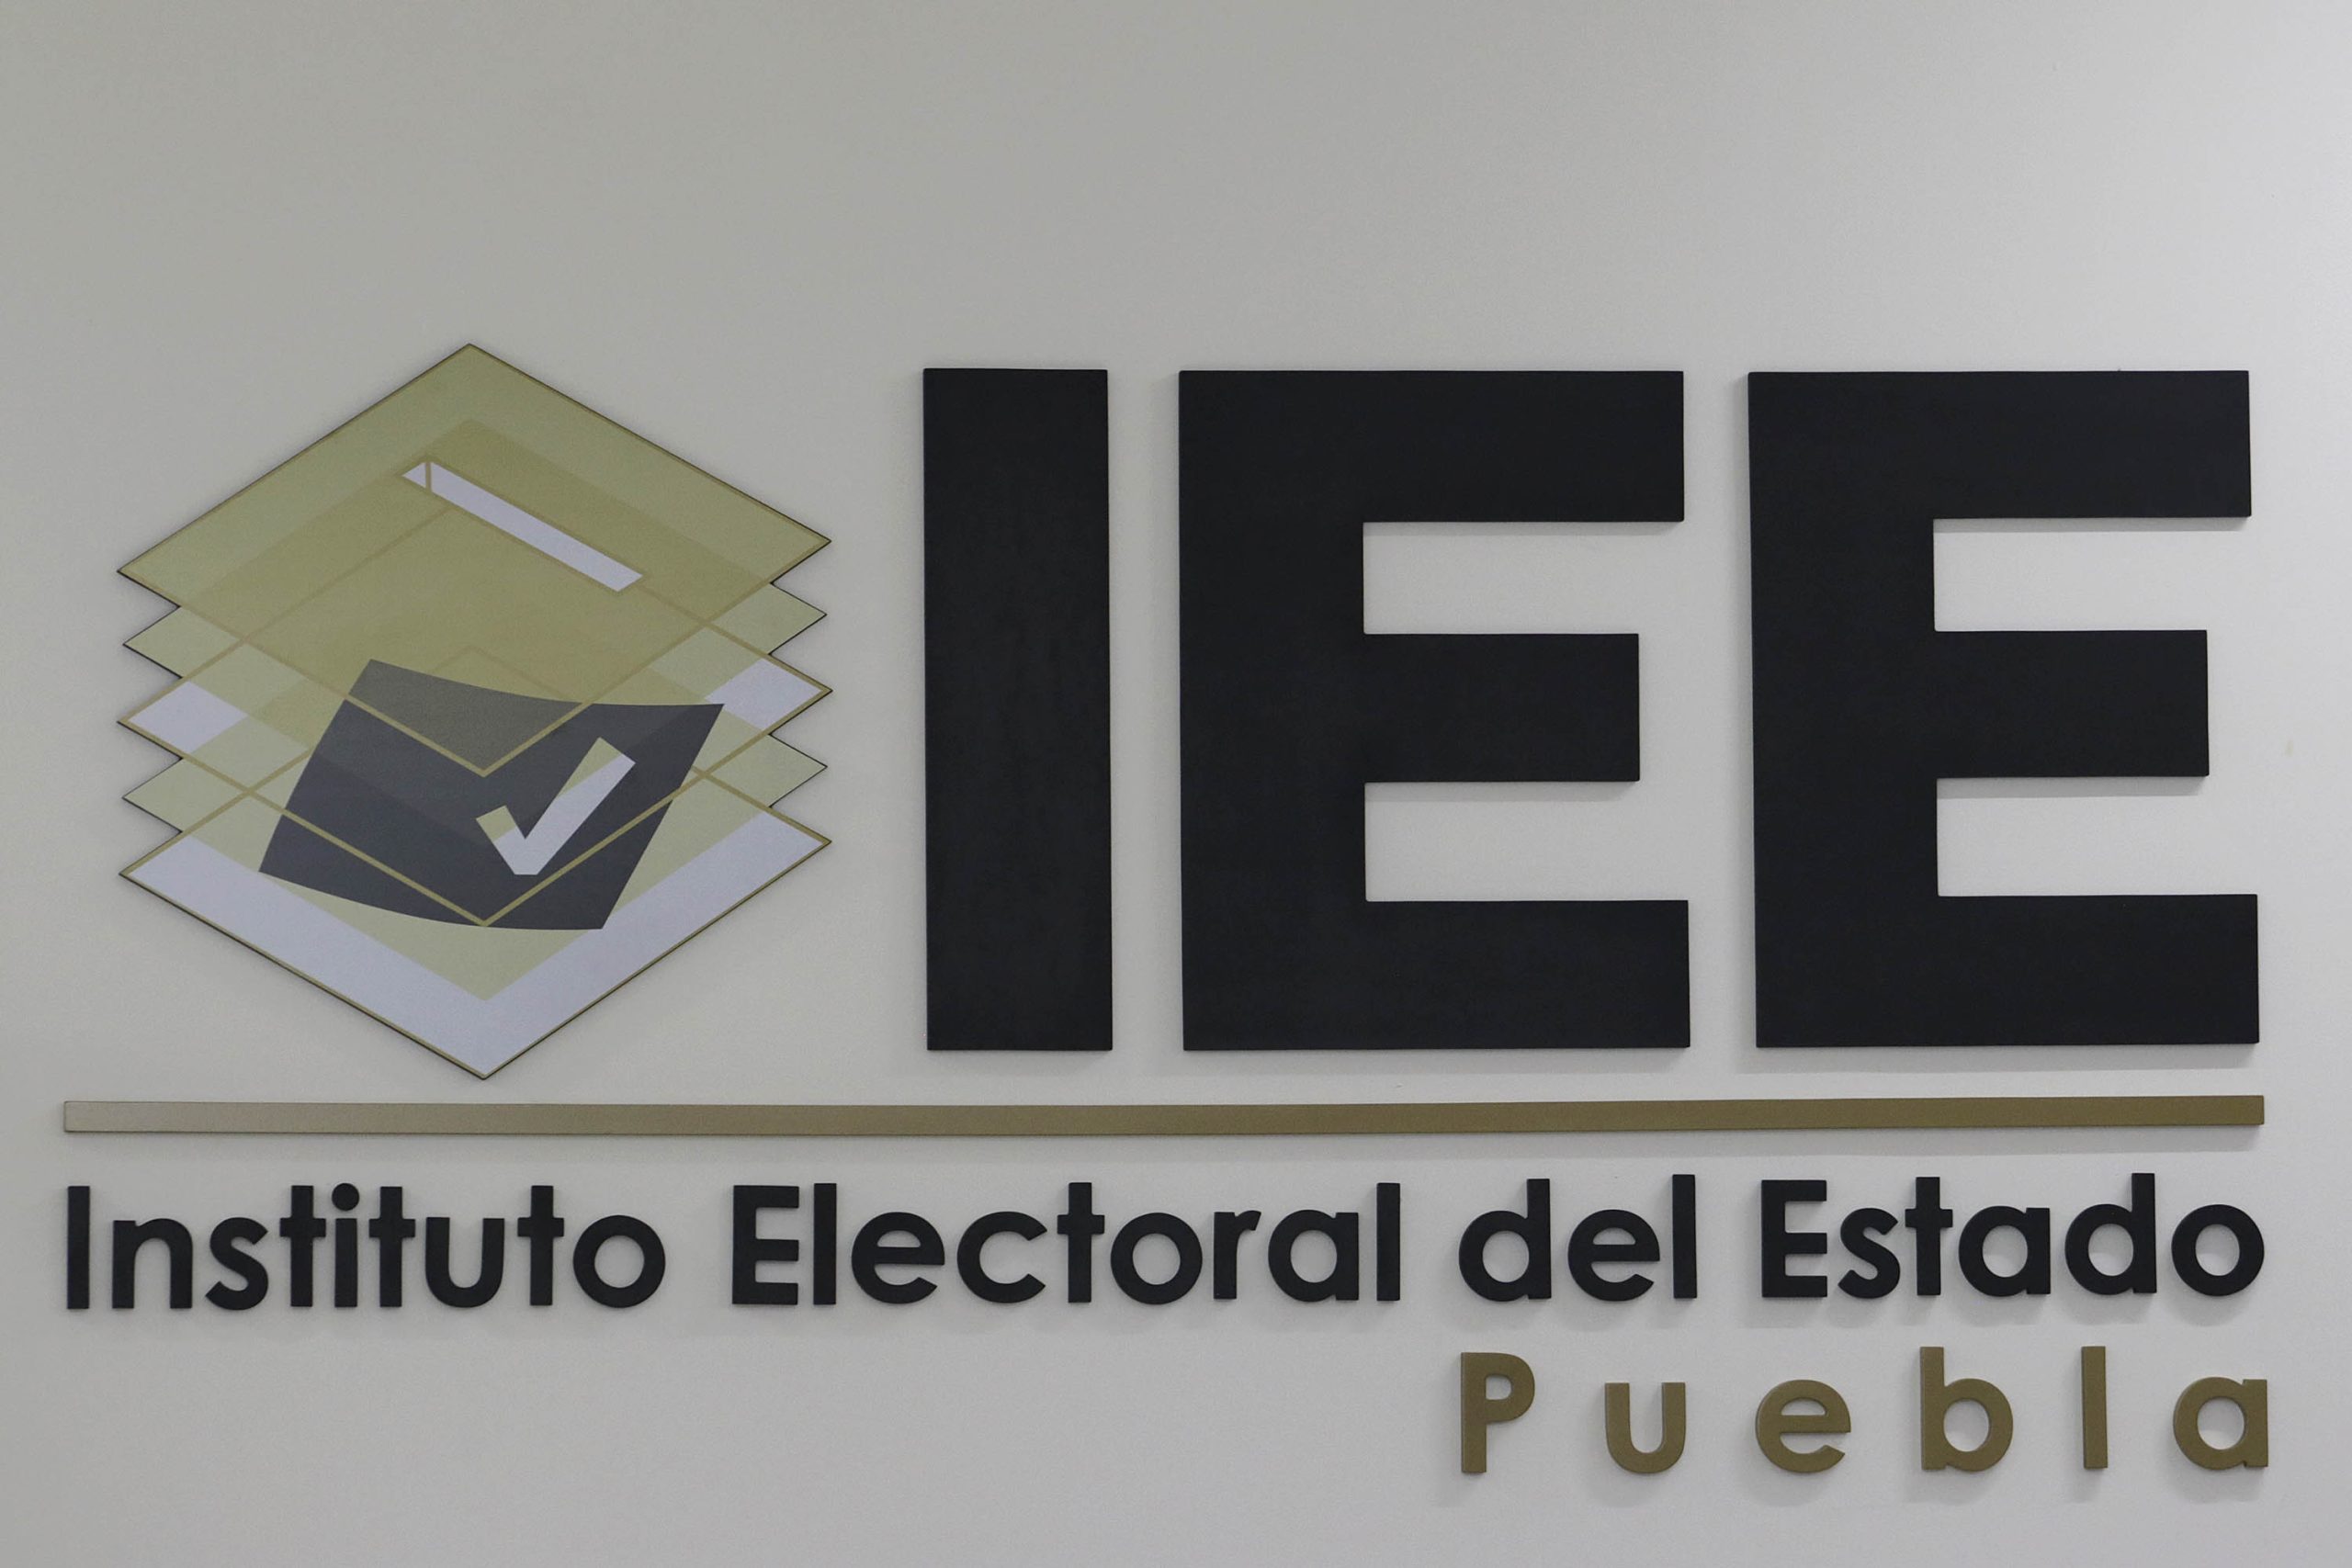 Impugnan activistas LGBT acciones afirmativas aprobadas por IEE en Puebla